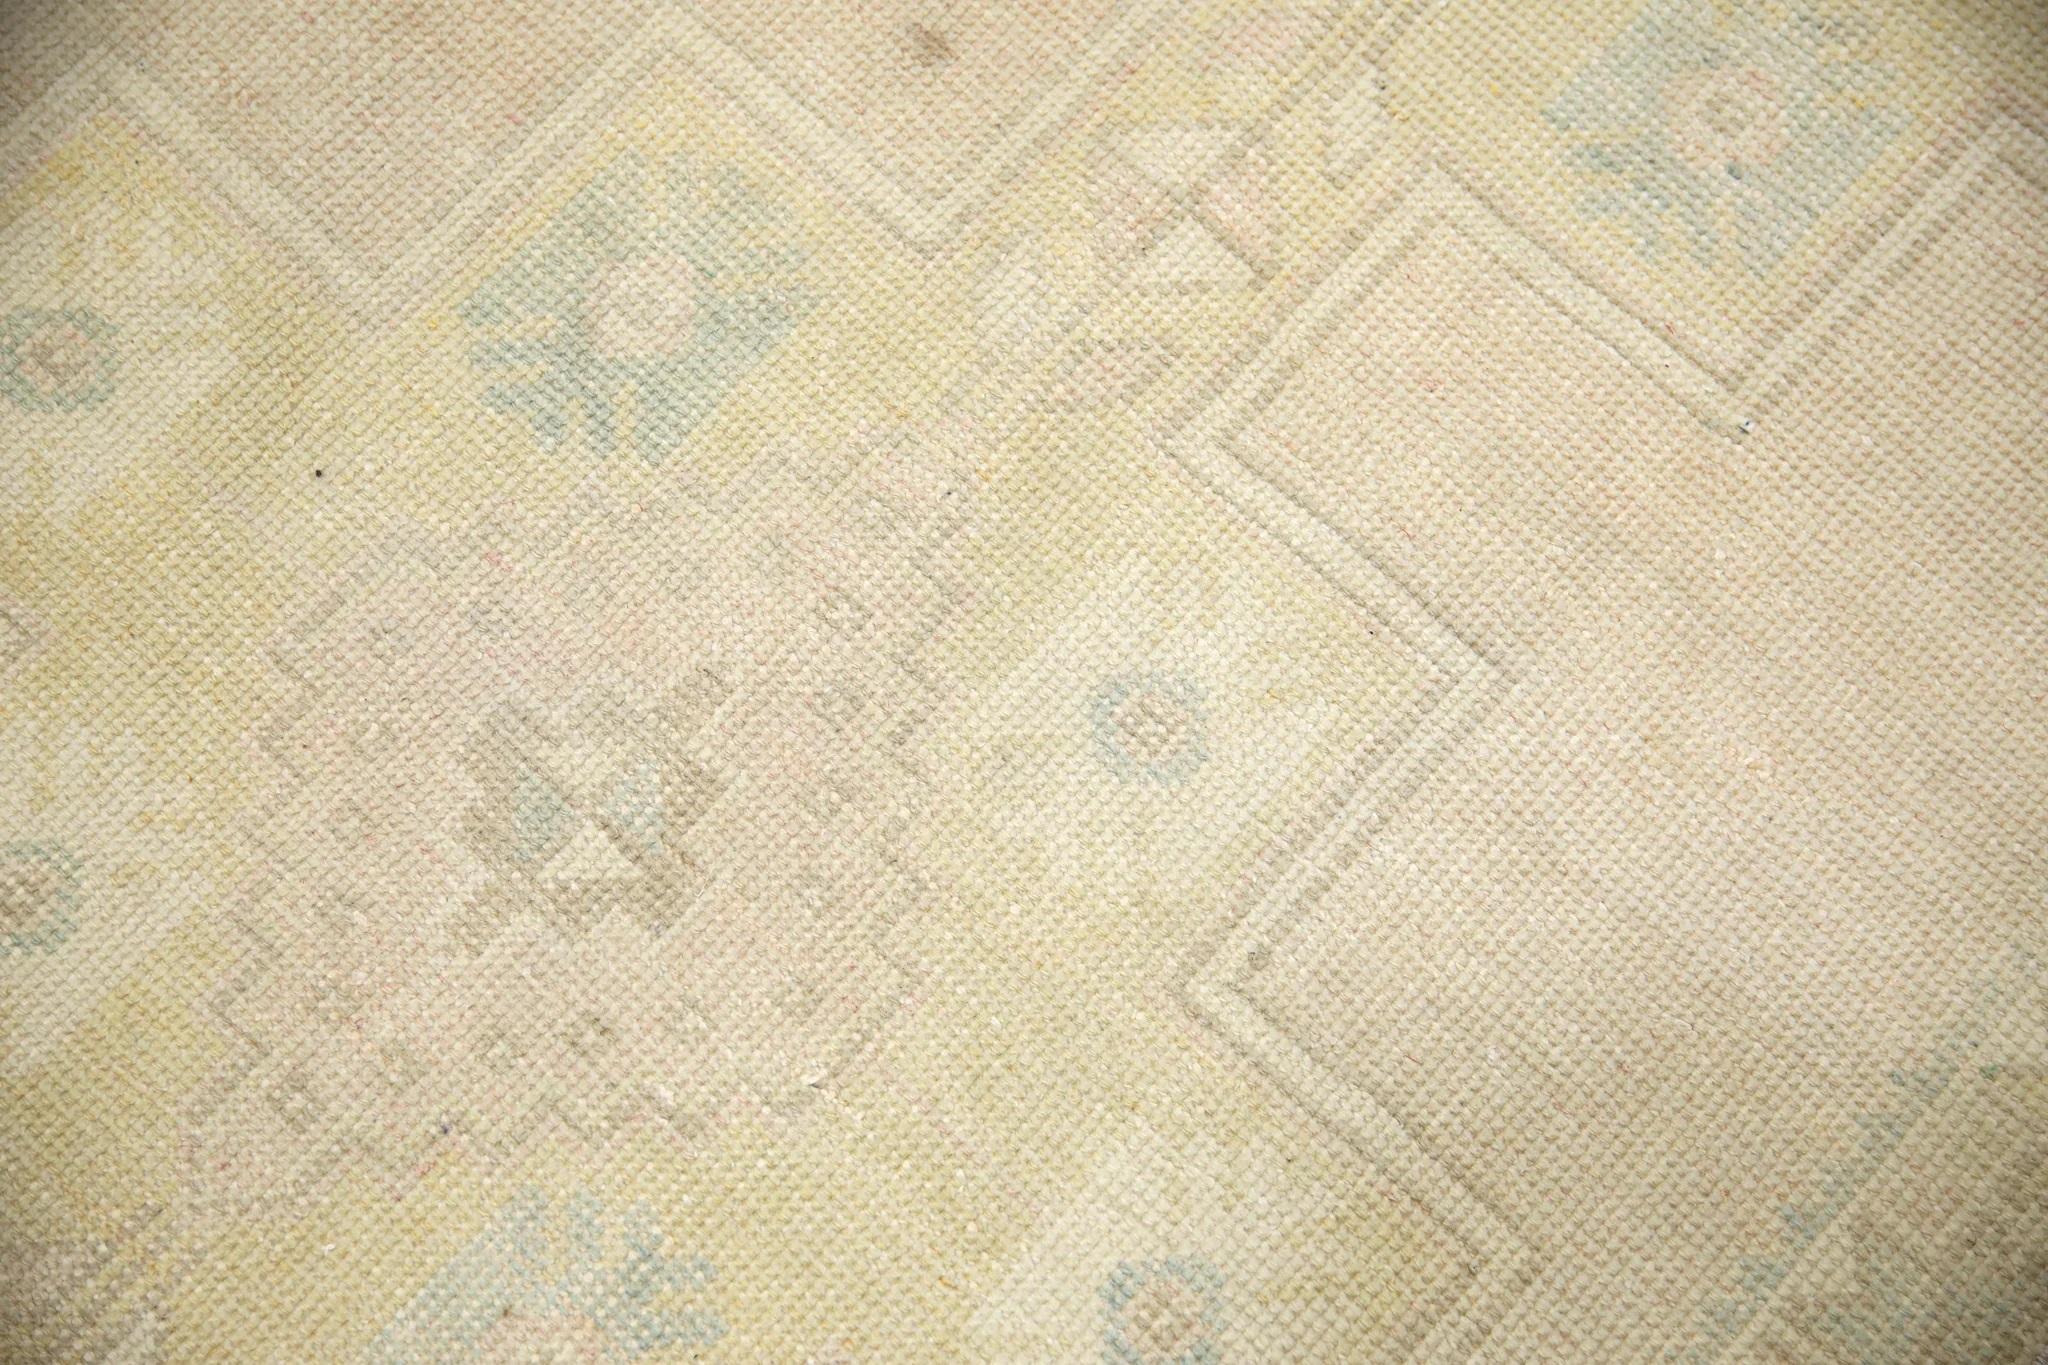 Wir präsentieren einen einzigartigen türkischen Teppich aus handgeknüpfter Wolle, der von geschickten Kunsthandwerkern mit Hilfe traditioneller, über Generationen weitergegebener Techniken sorgfältig hergestellt wird. Dieser exquisite Teppich rühmt